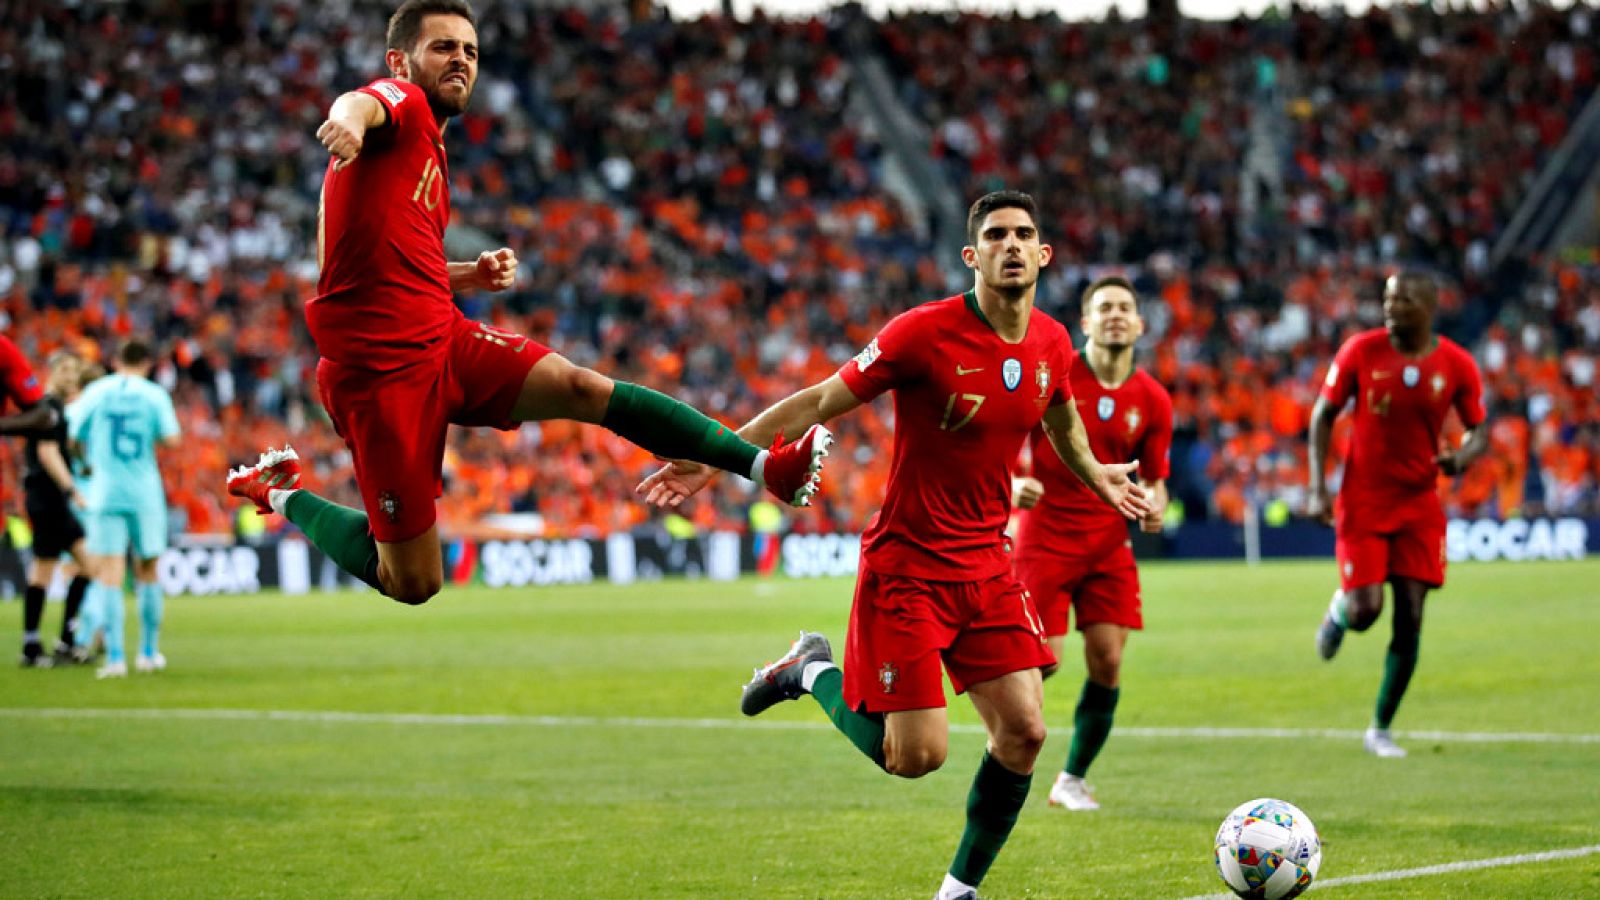 Portugal se alzó como primer campeón de la Liga de las Naciones sin necesidad de recurrir a su capitán y máxima estrella, Cristiano Ronaldo, que volvió a quedarse con las ganas de ser protagonista en la consecución de un trofeo internacional. Un soli